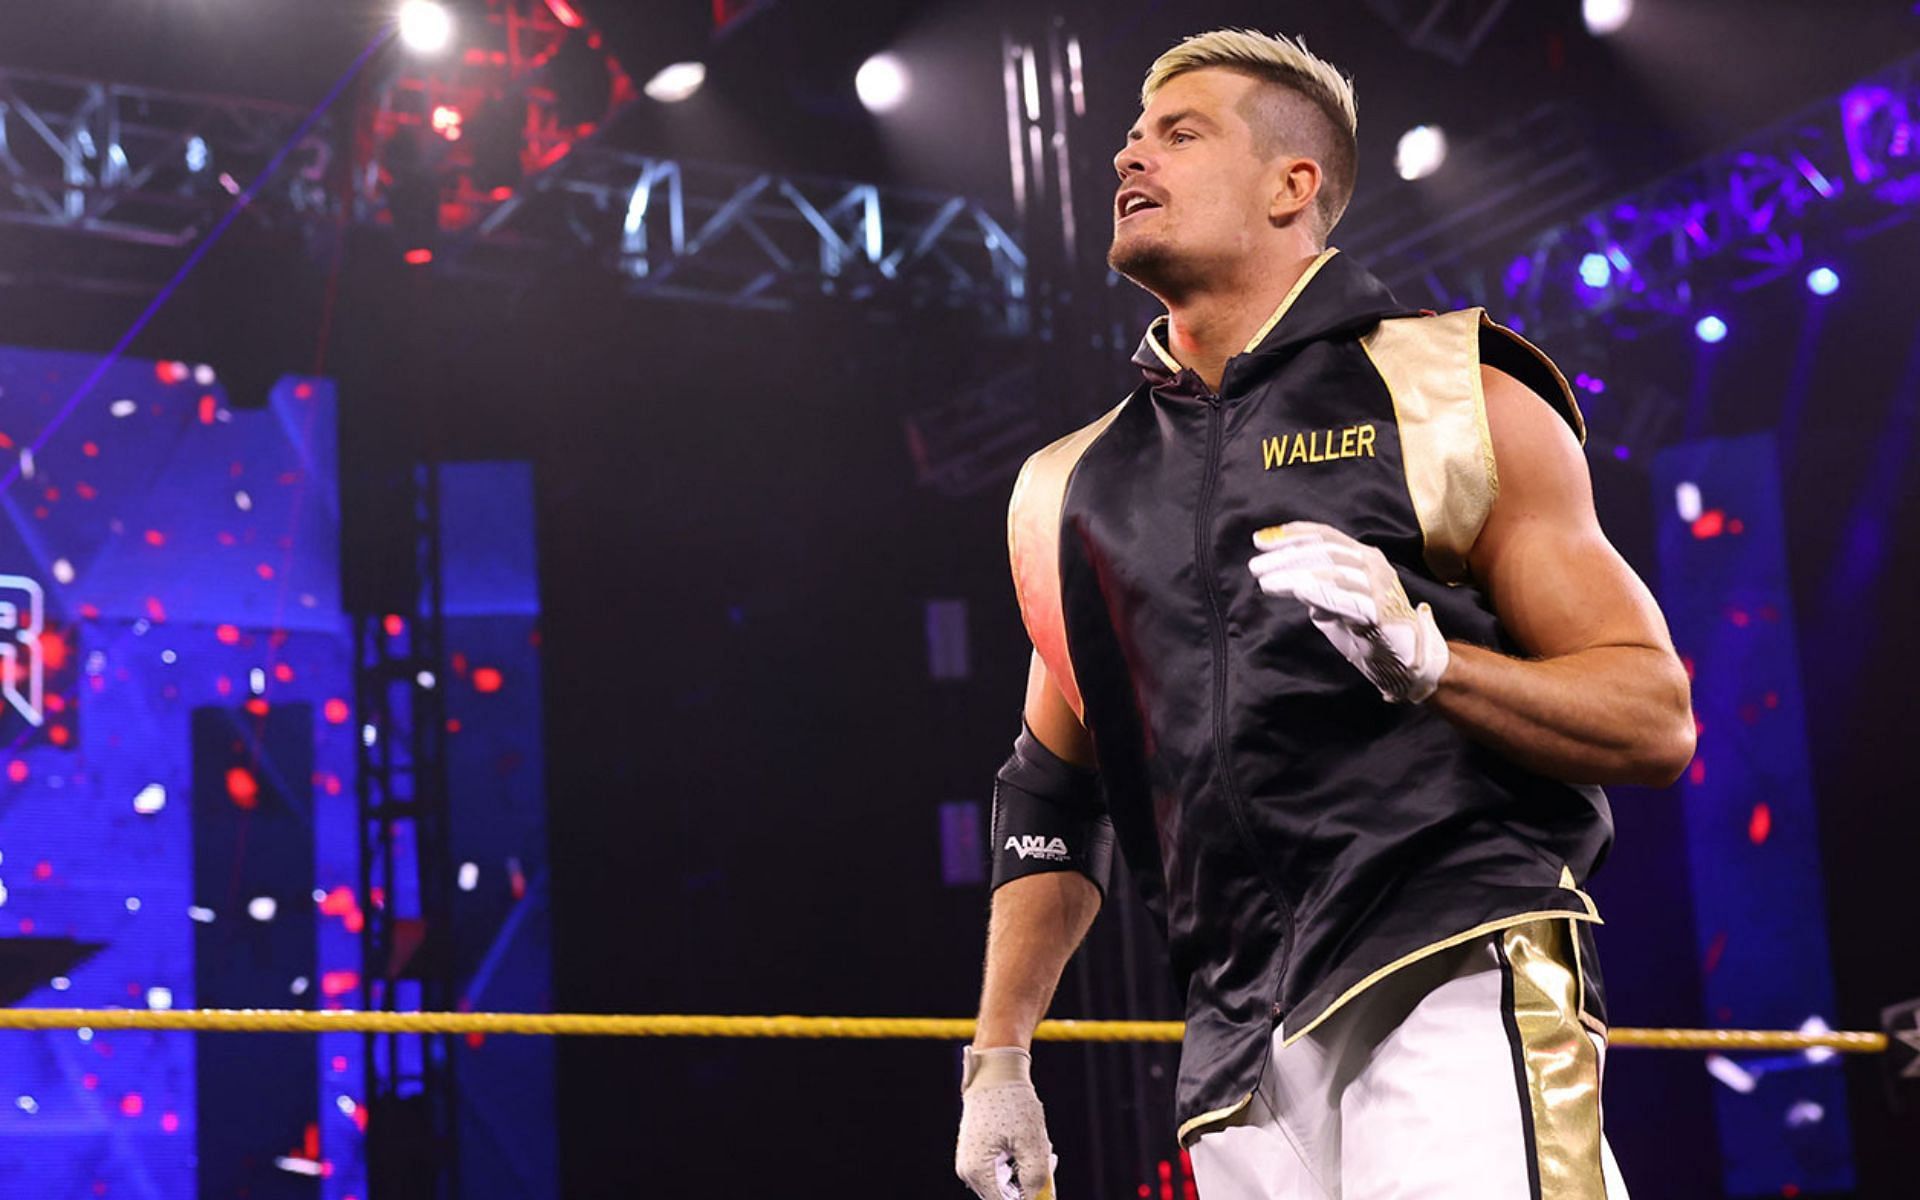 WWE NXT Superstar, Grayson Waller